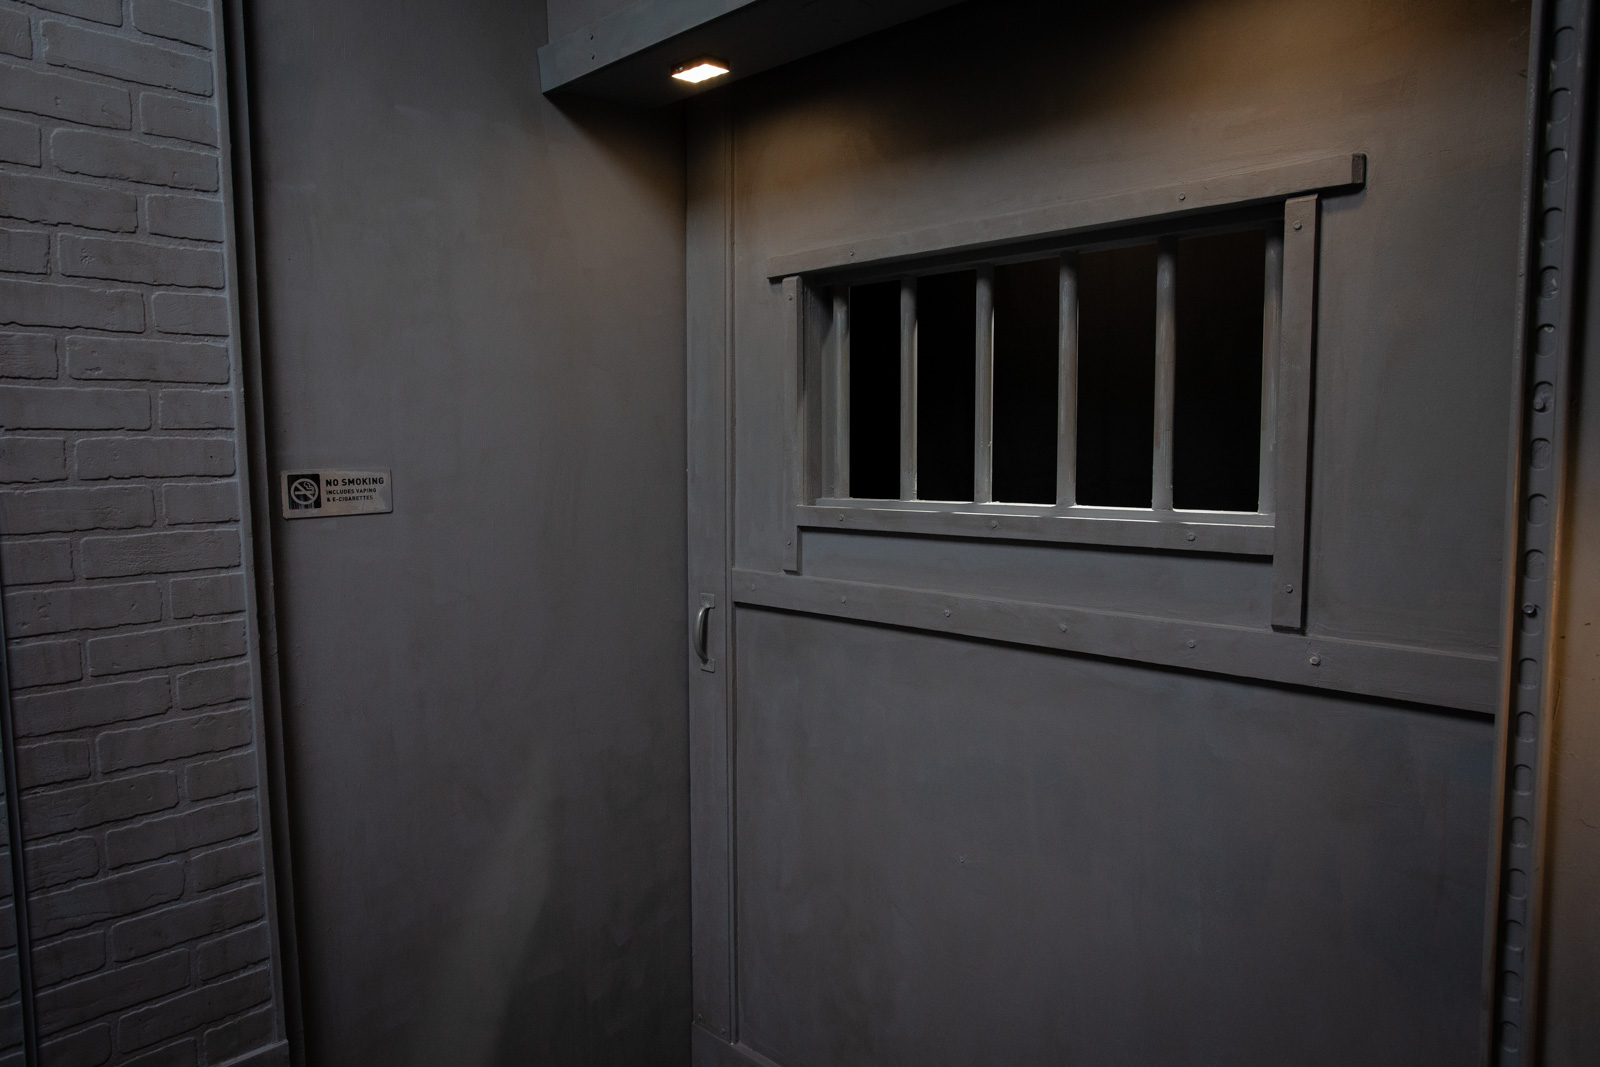 Jail visitation film set for rent in LA